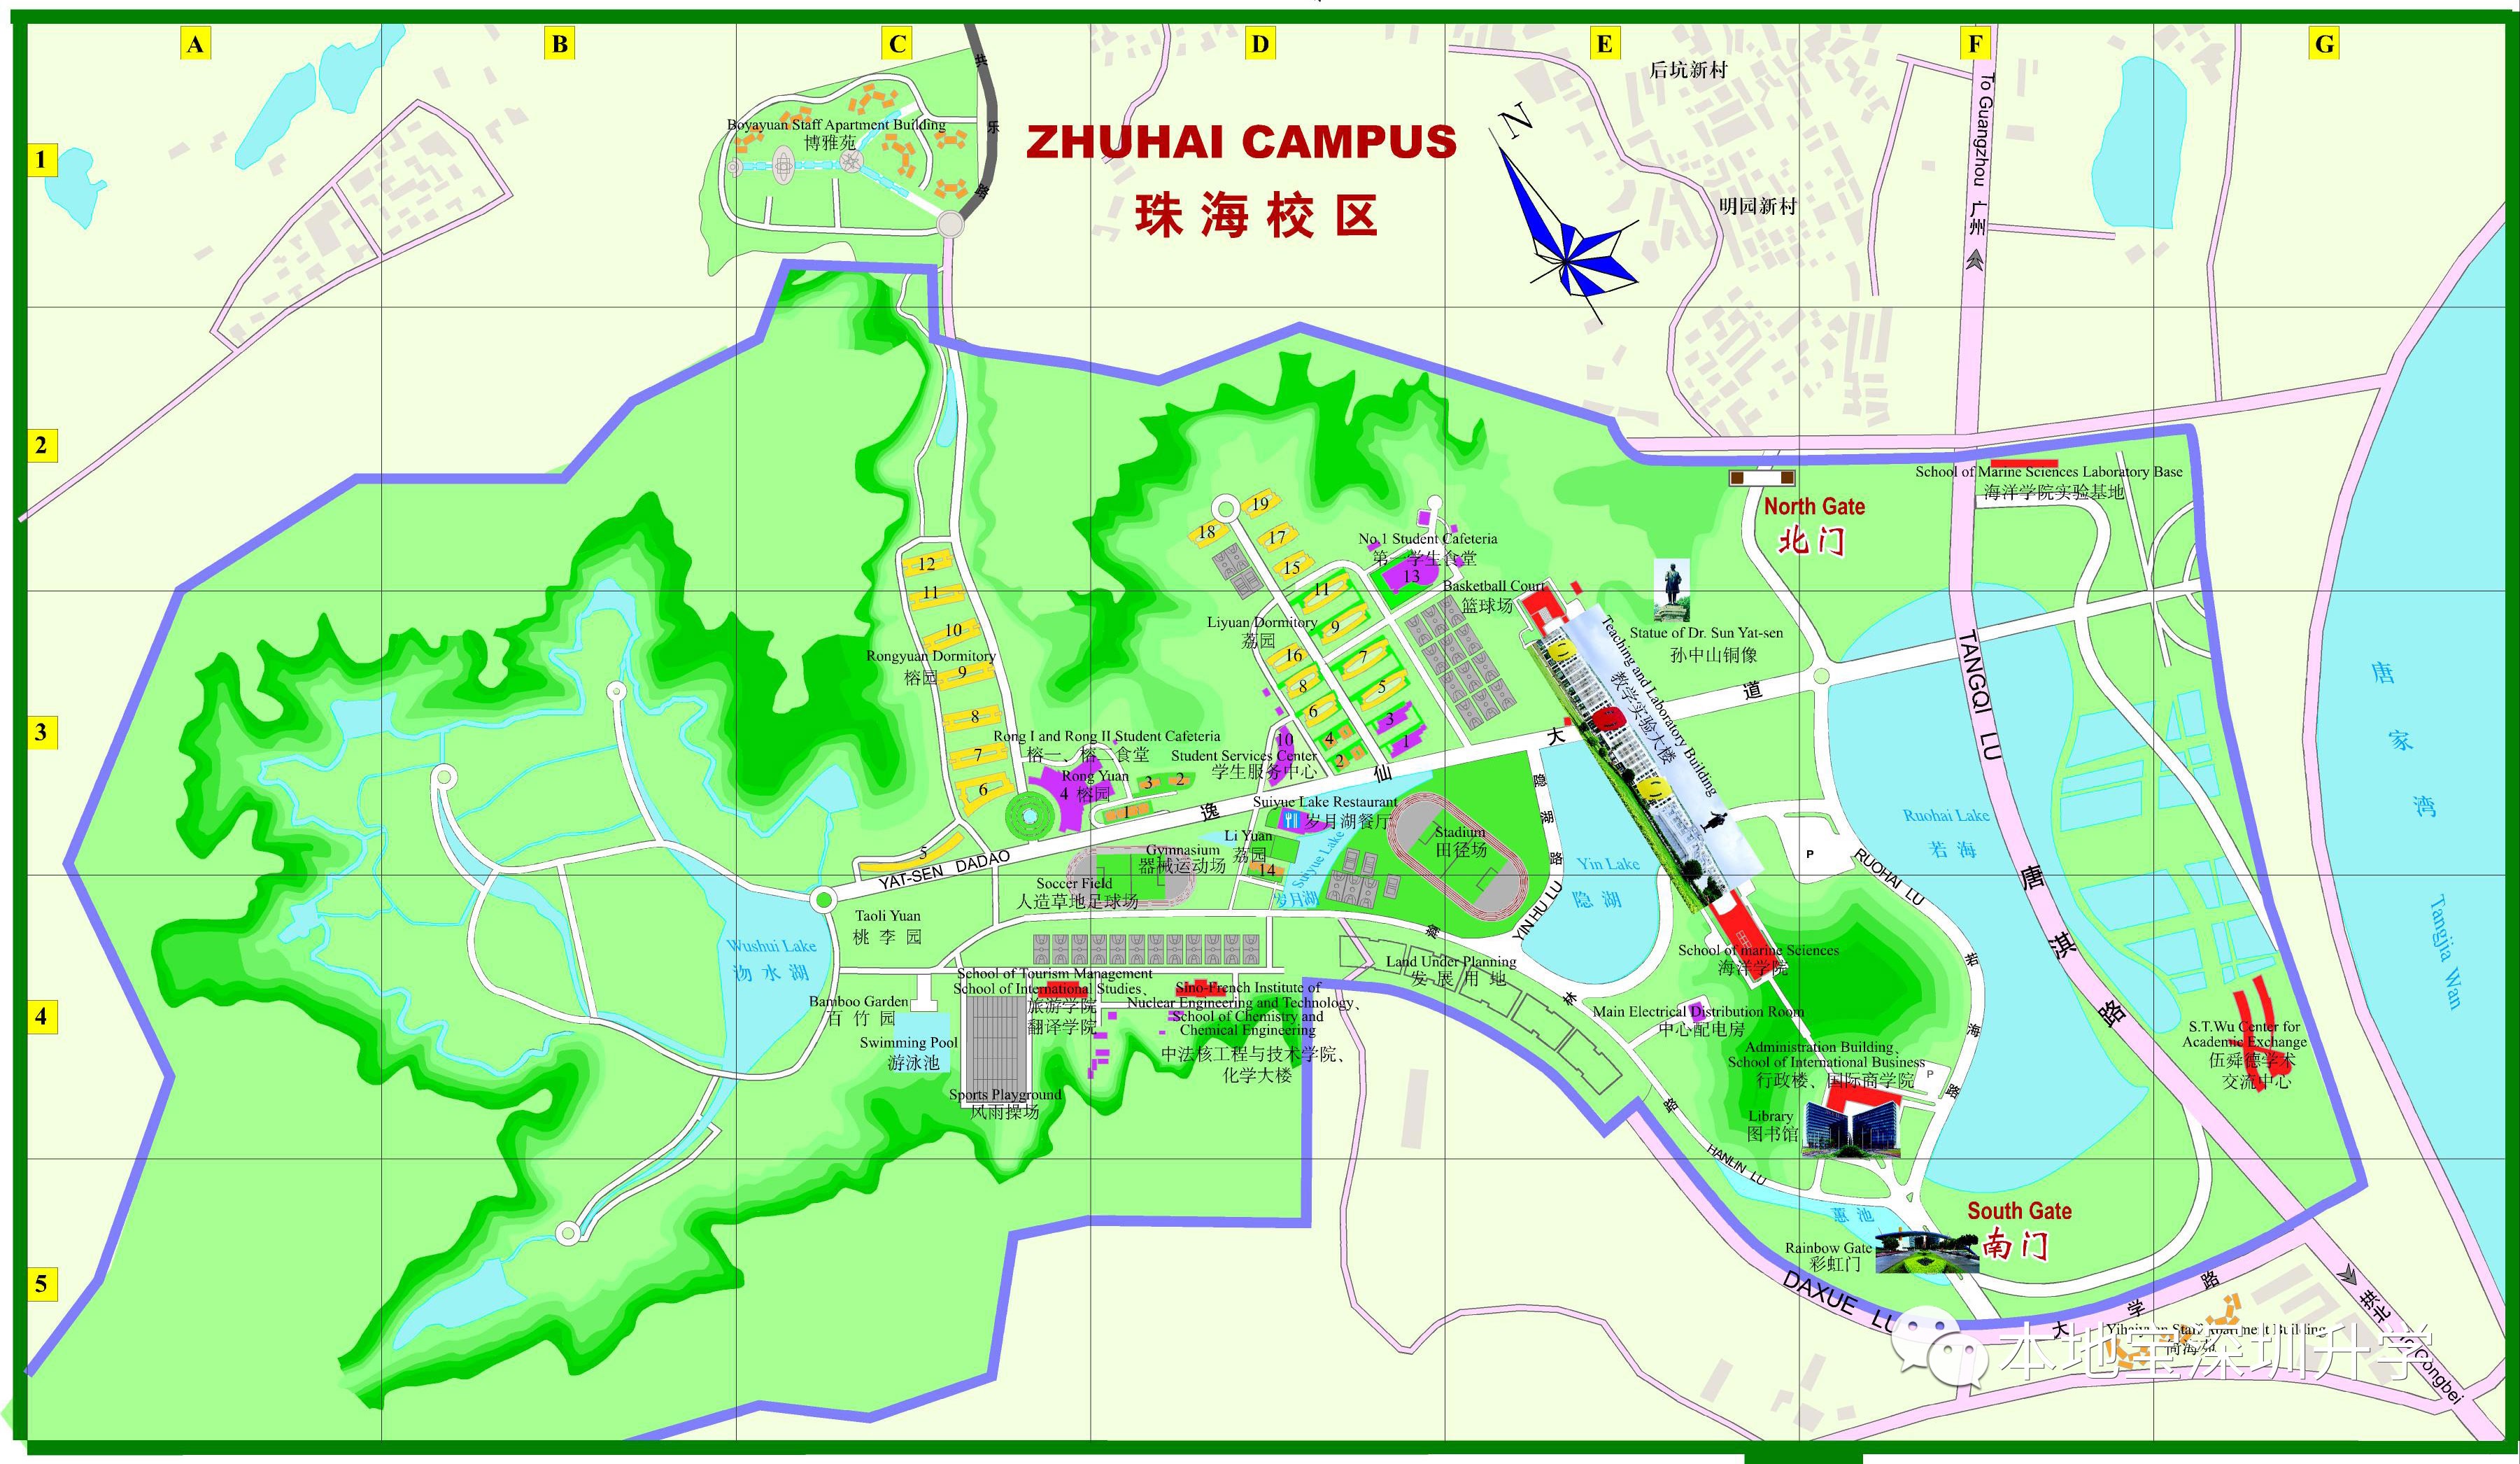 广东省珠海市前山路206号占地面积:900亩暨南大学珠海校区位于珠海市